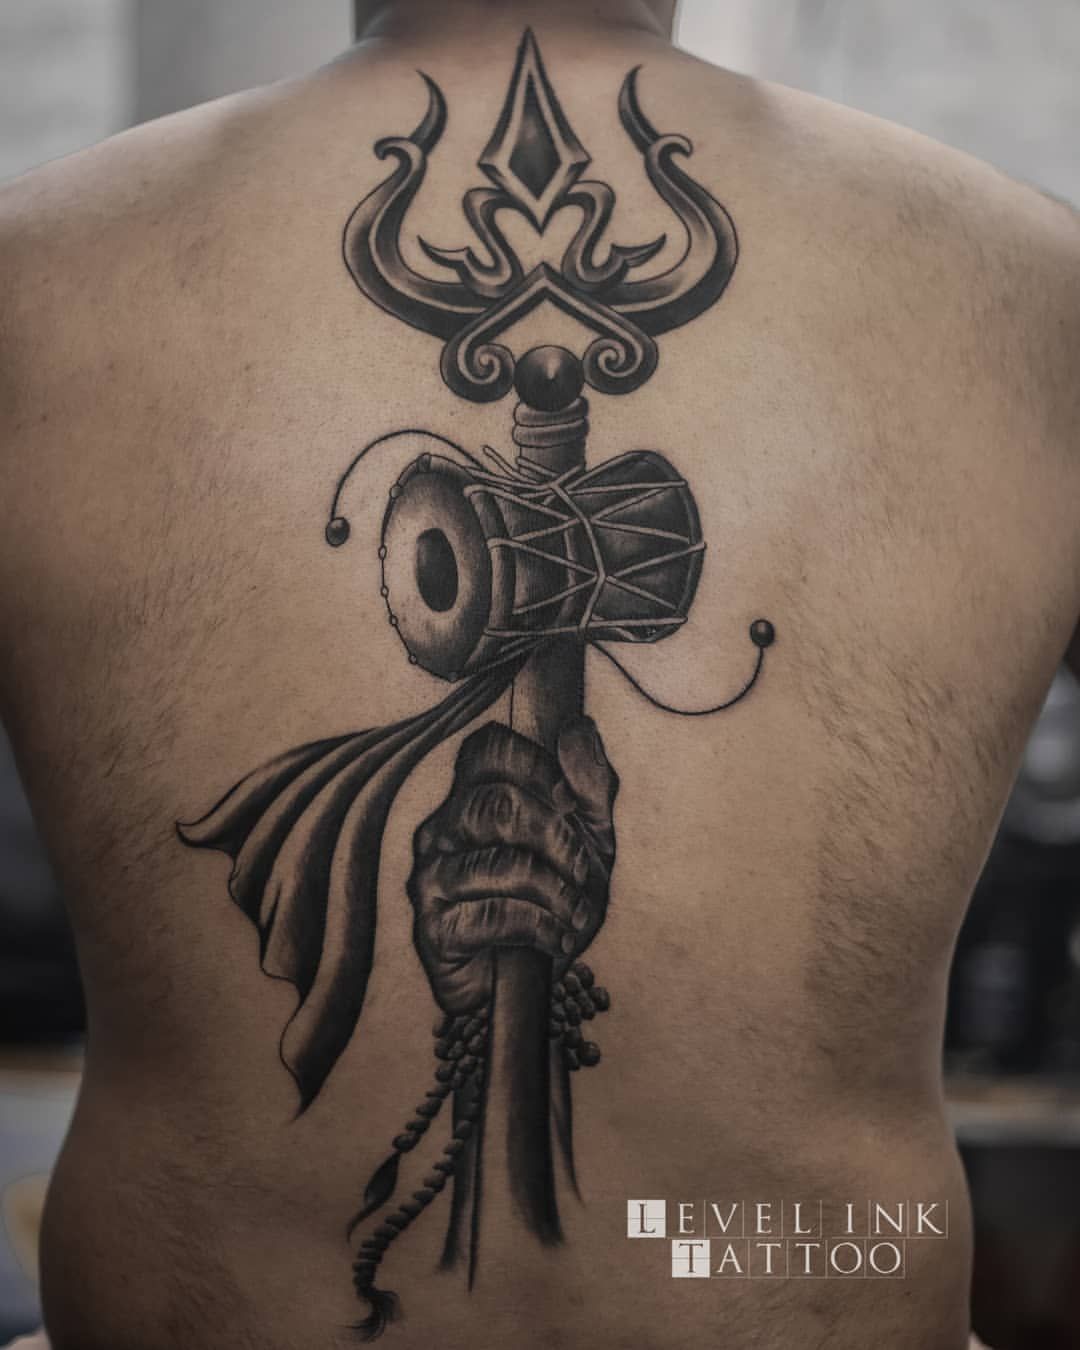 Trishul tattoo done by Billu tattoo at level ink tattoos  Shiva tattoo  design Trishul tattoo designs Om tattoo design